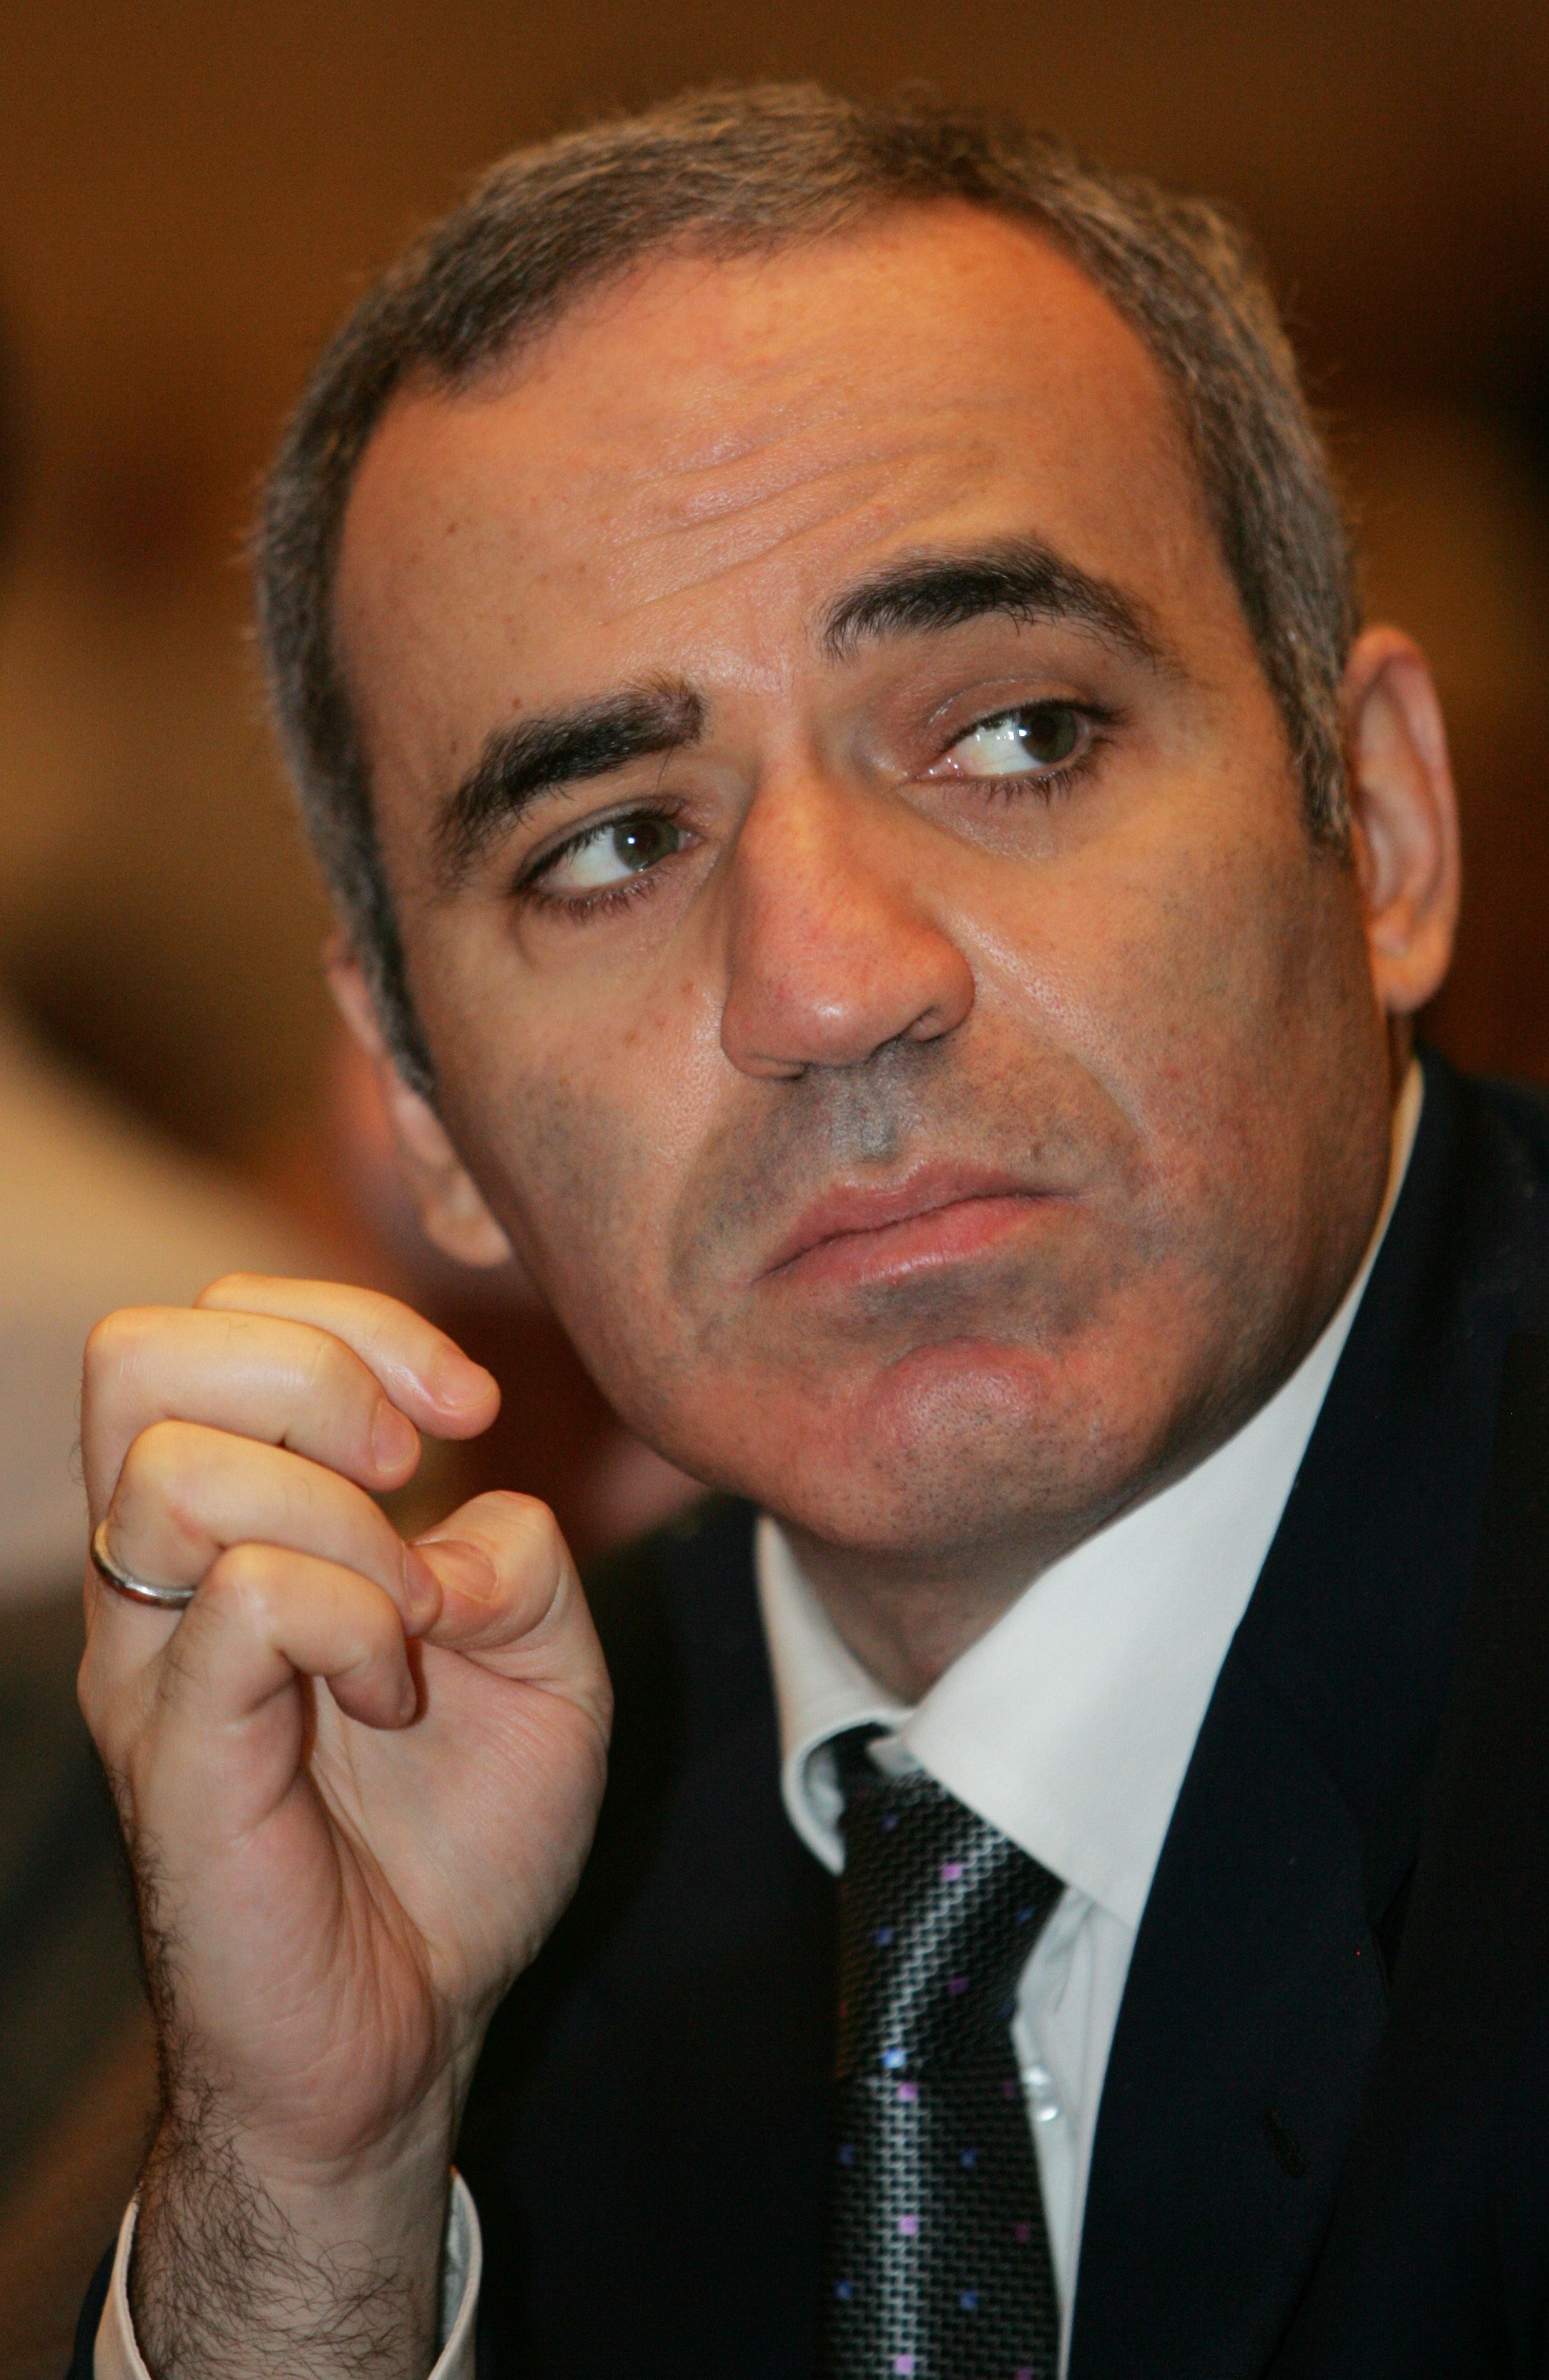 O retorno de Garry Kasparov, a lenda do xadrez, após 12 anos